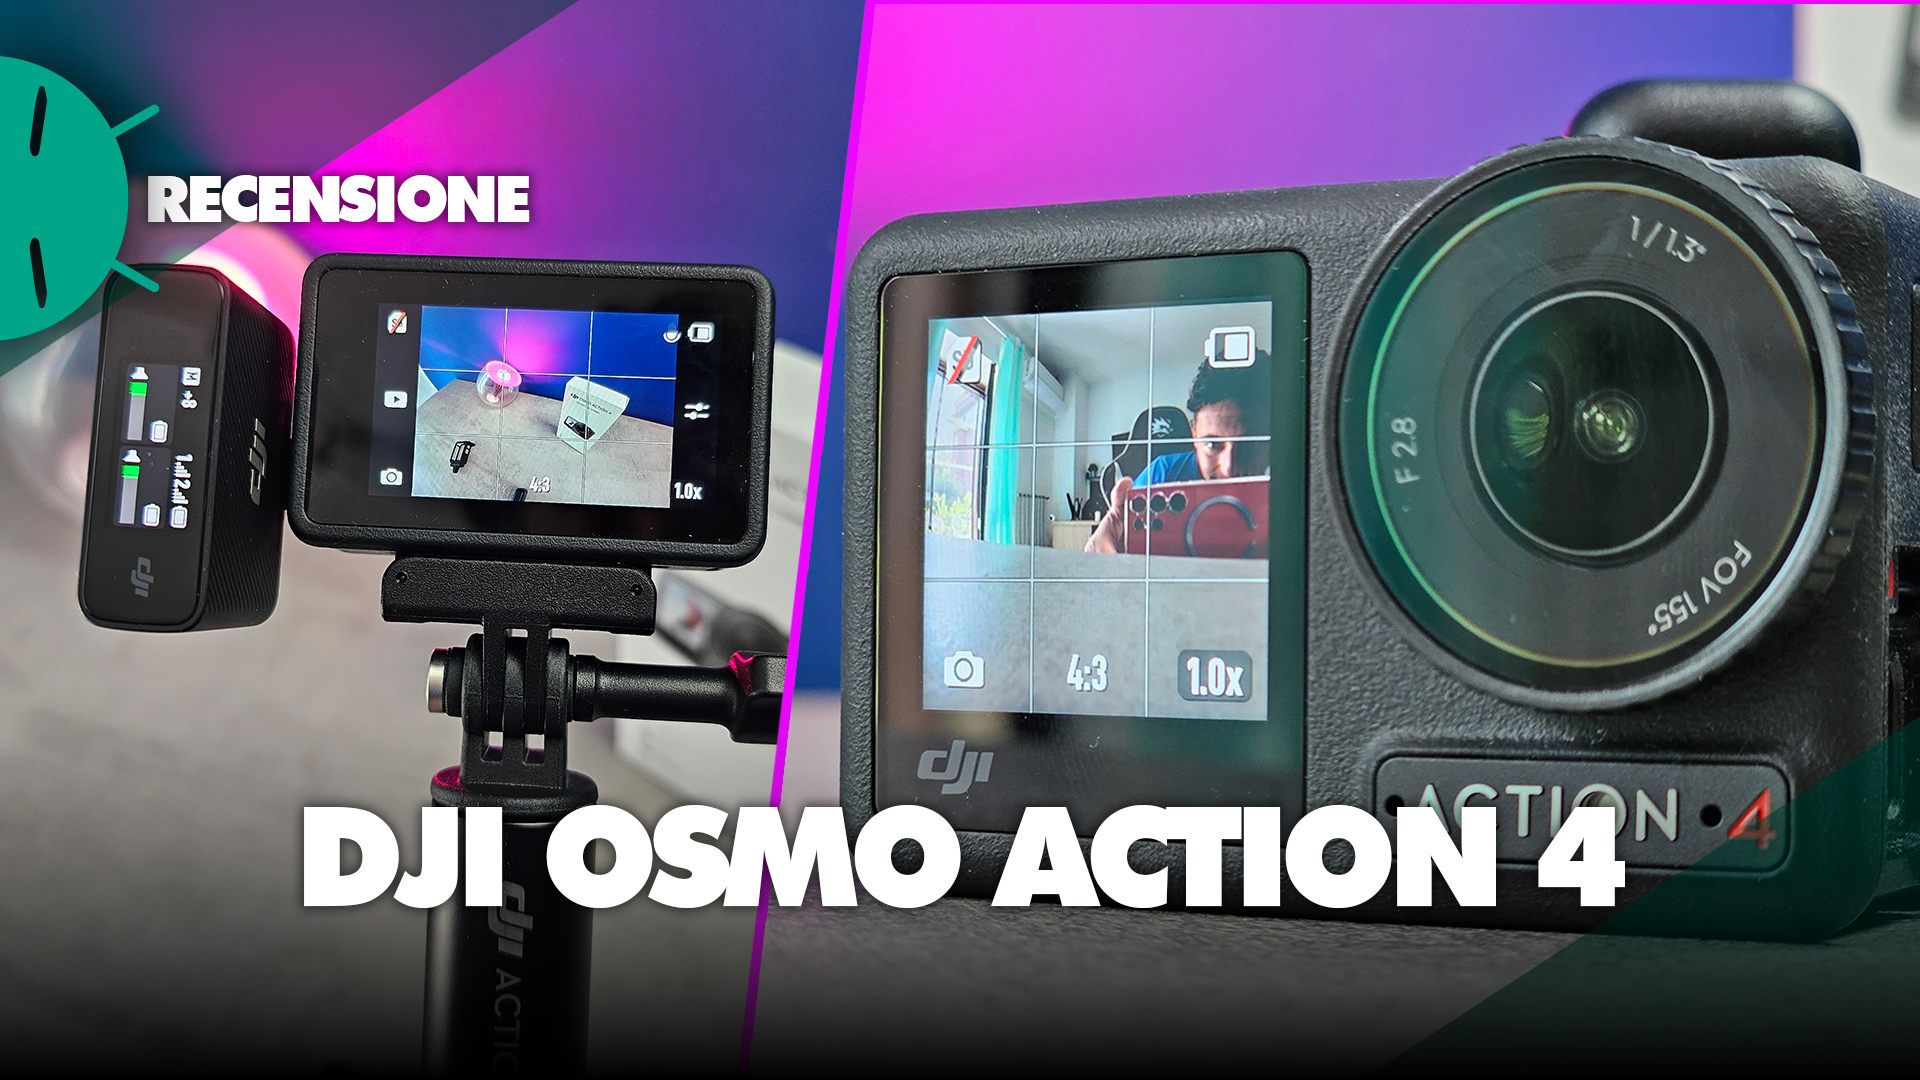 DJI Osmo Action 4 : Une nouvelle référence pour les action cam